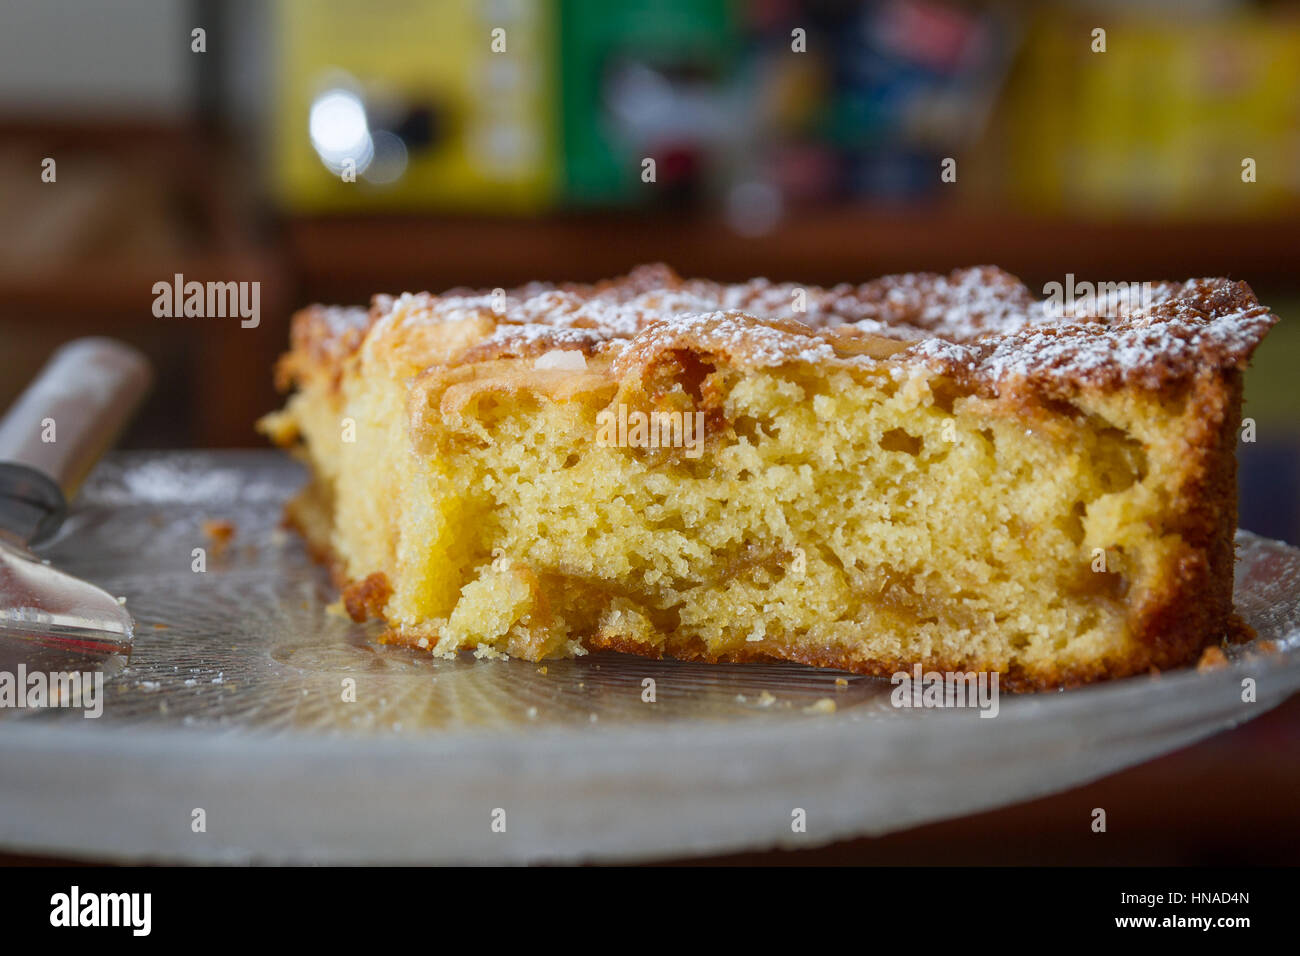 La tarte est un italien typique doux, couvert de pâte sablée avec de la confiture, de la crème ou des fruits frais Banque D'Images